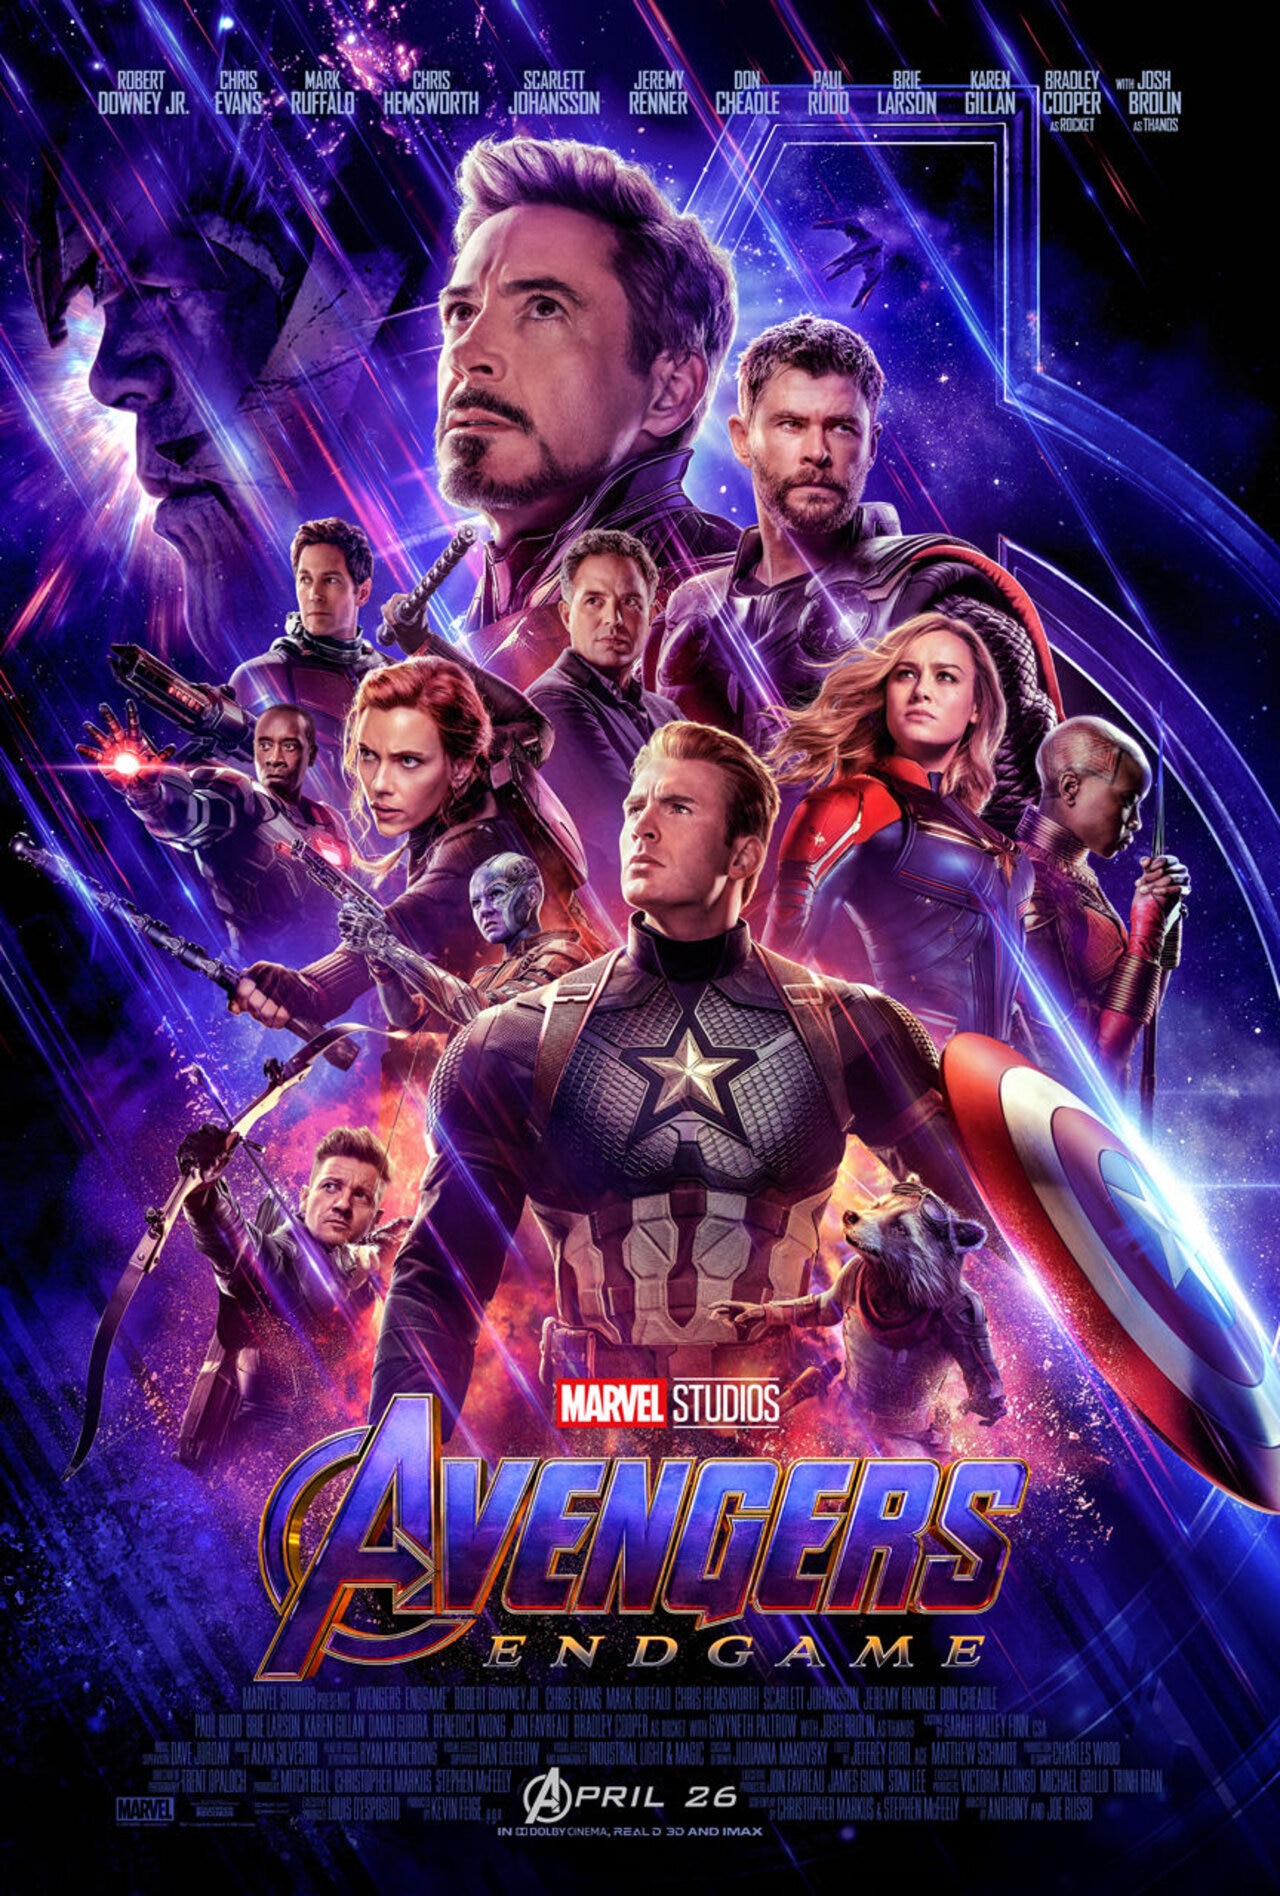 Avengers: Endgame' Refresher: Thanos